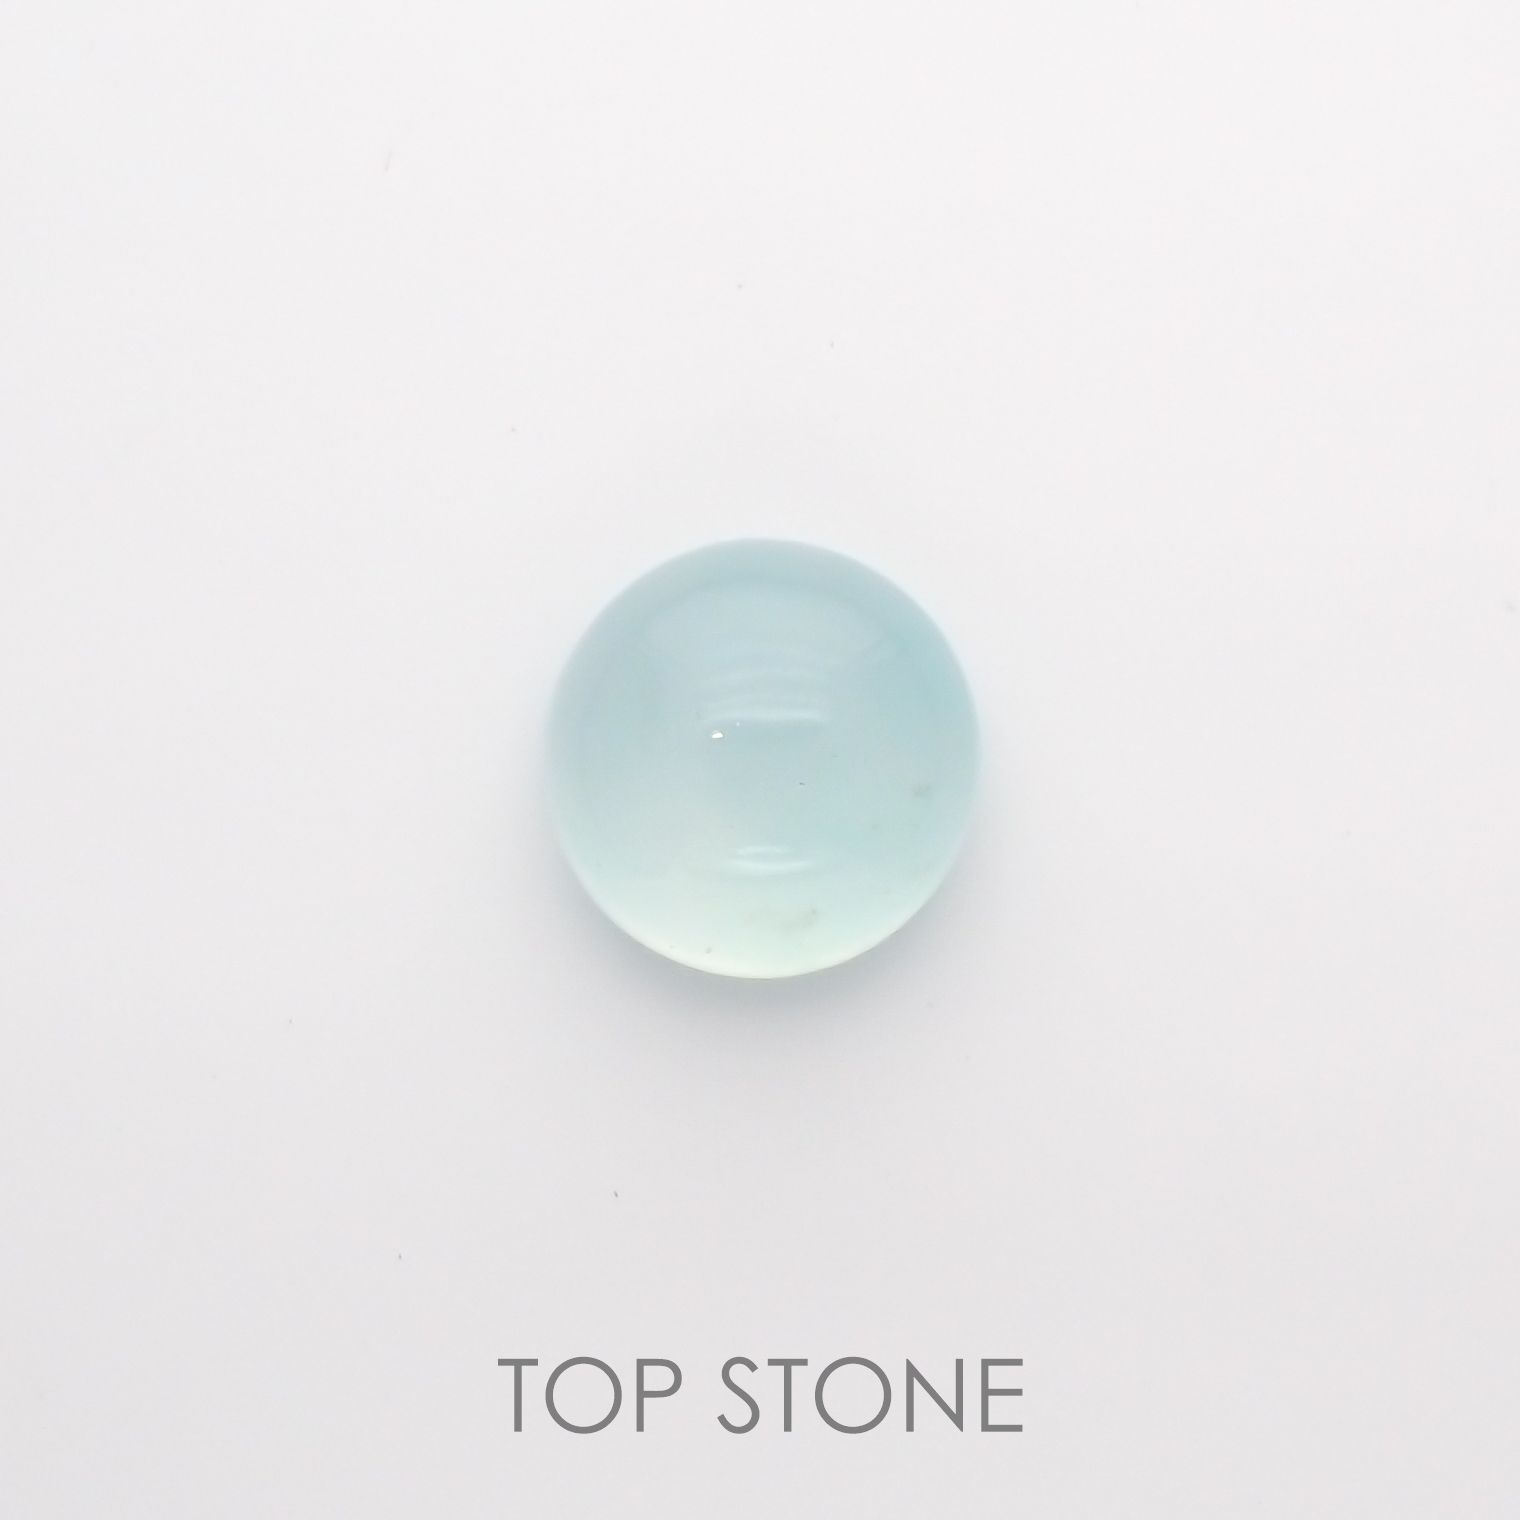 宝石名から探す / アクアプレーズ 通販 | TOP STONE(トップストーン)